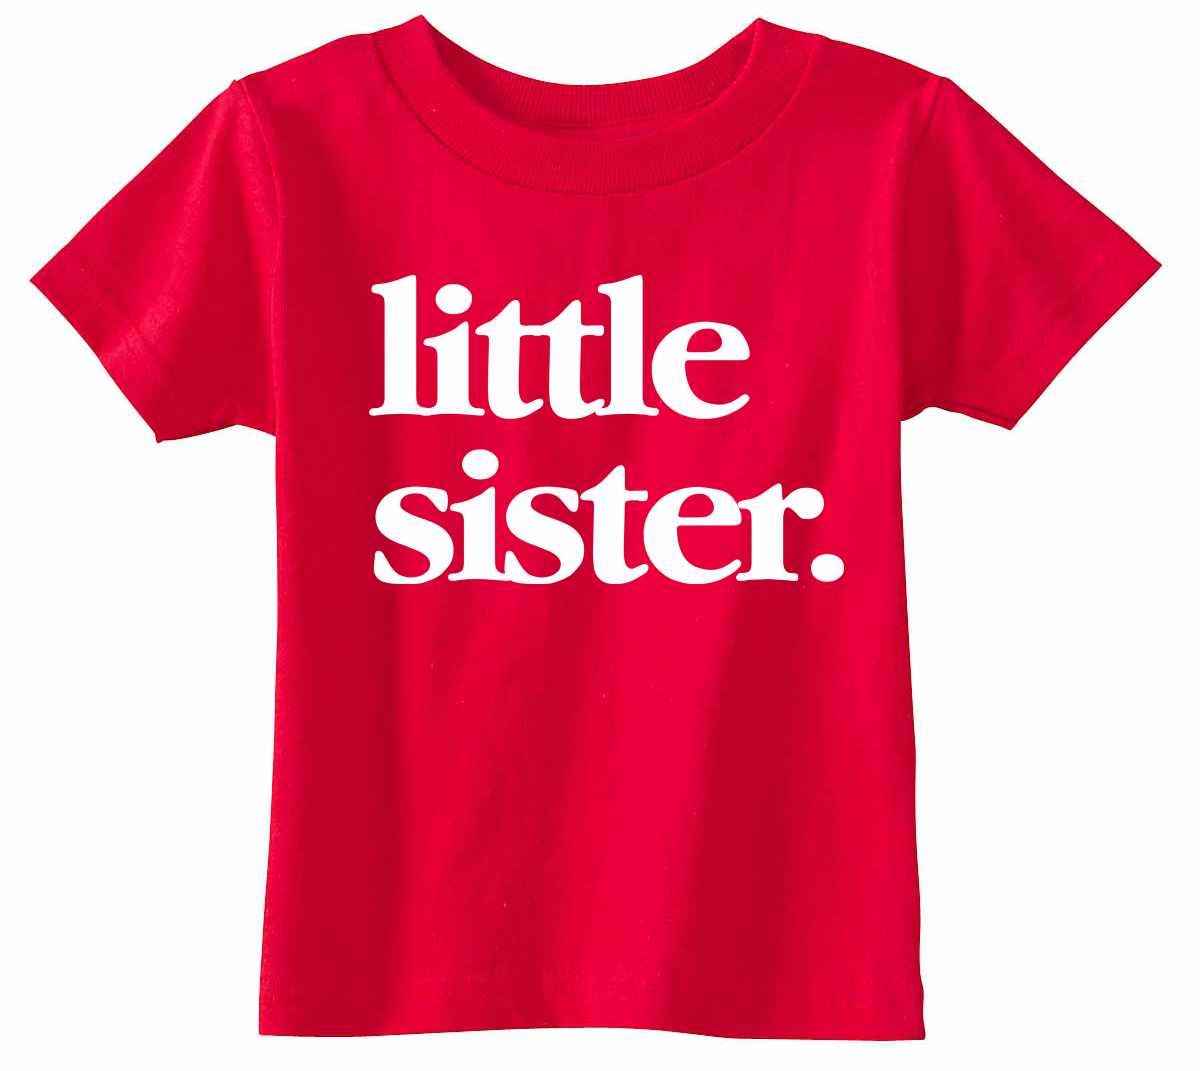 Little Sister on Infant-Toddler T-Shirt (#1321-7)